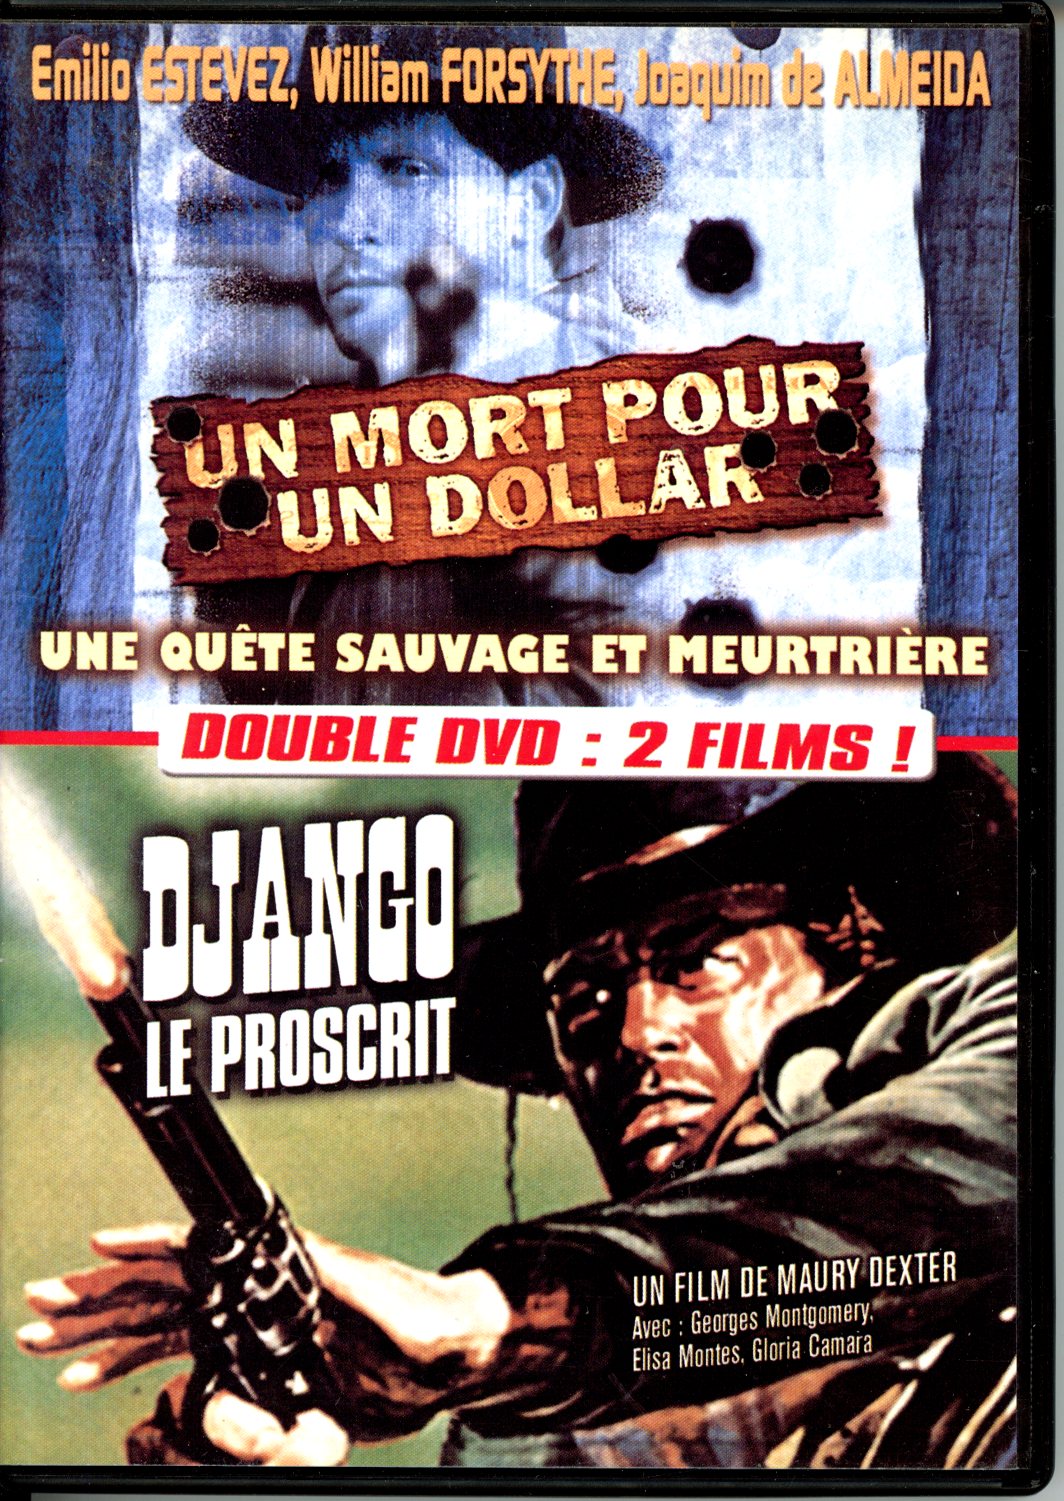 UN MORT POUR UN DOLLAR - DJANGO LE PROSCRIT - DVD OCCASION